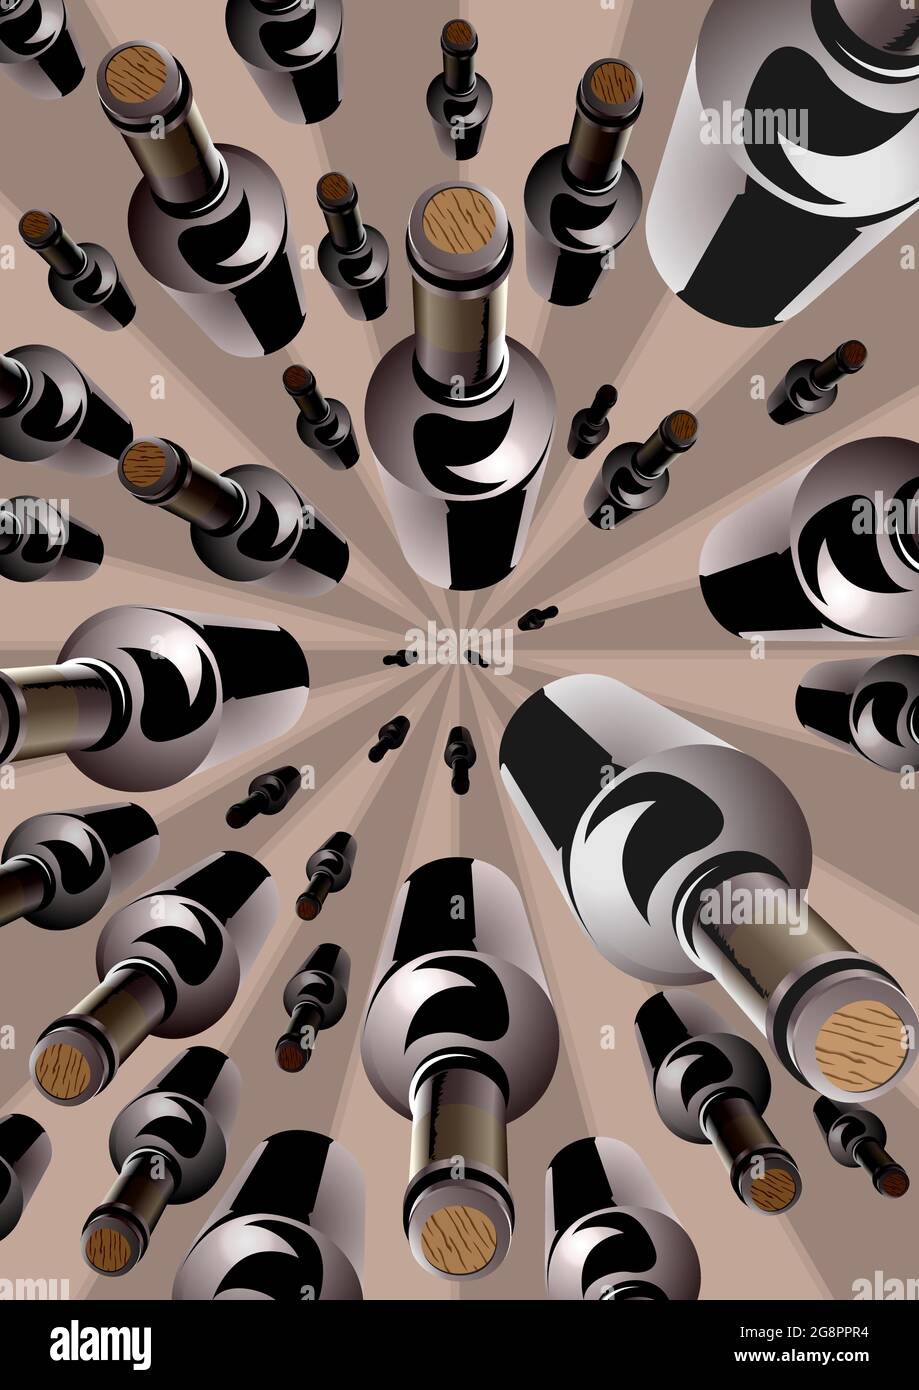 Le bottiglie di vino in un overhead pattern convergenti Illustrazione Vettoriale